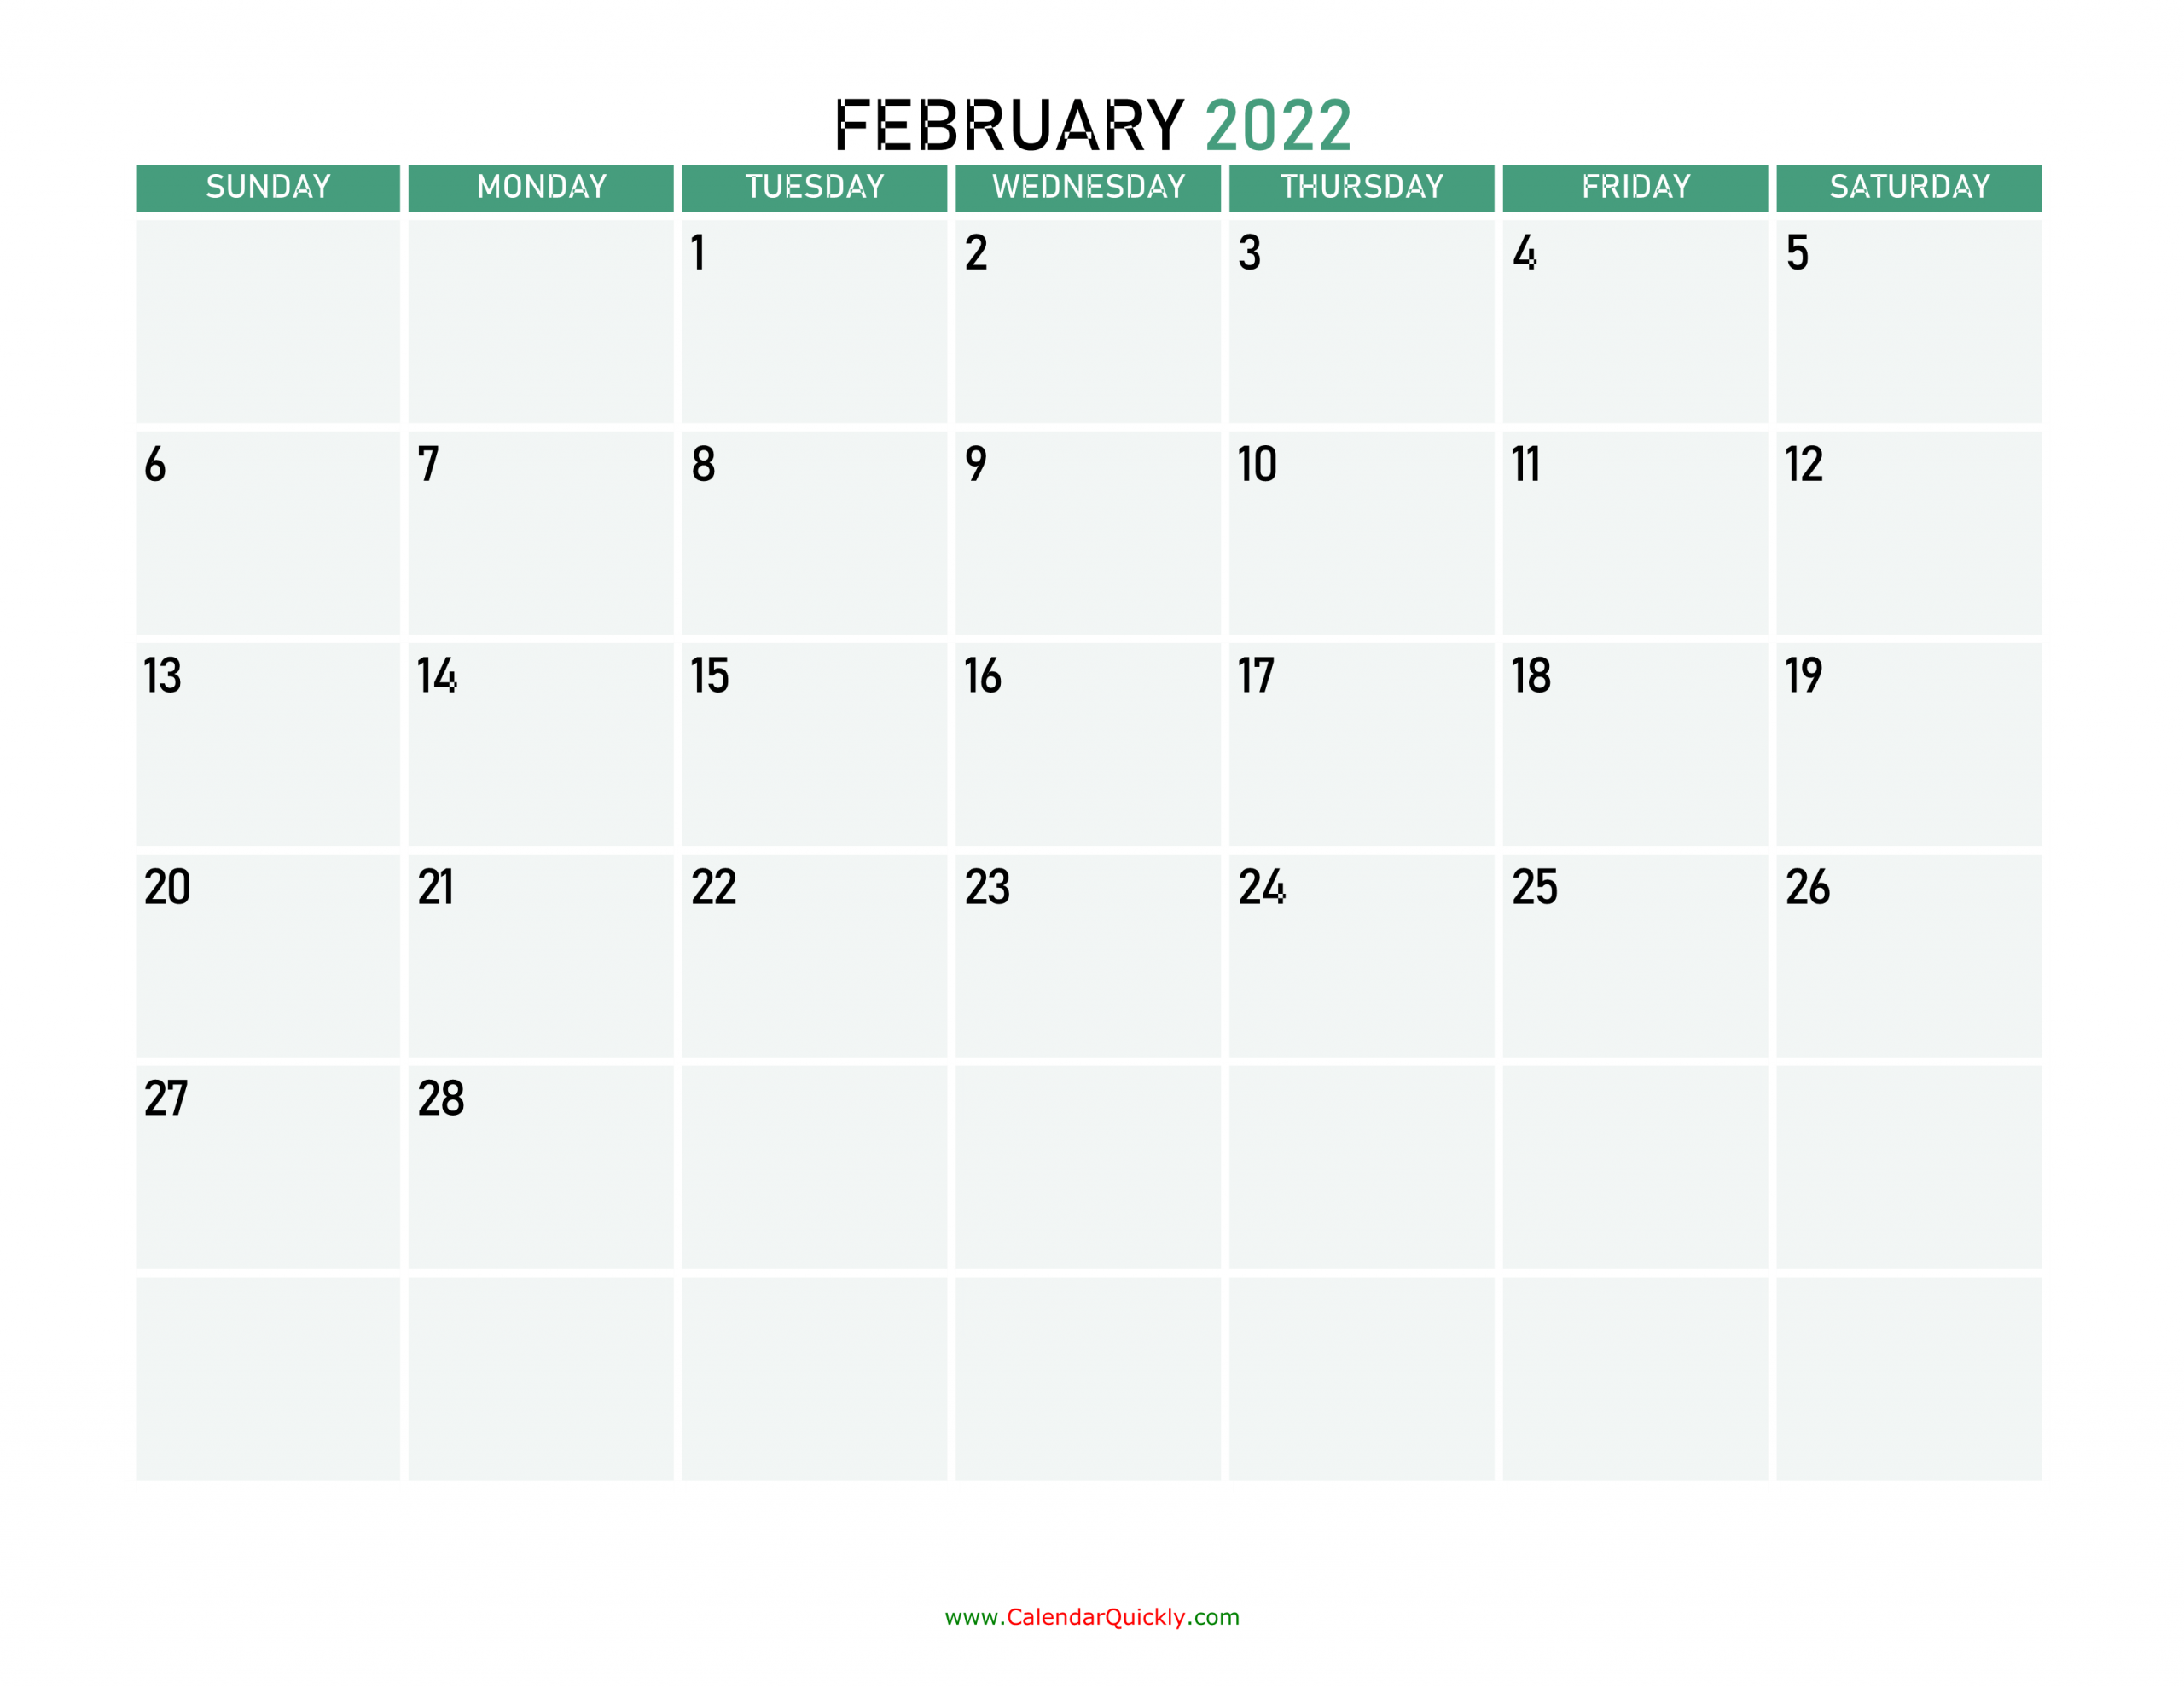 february 2022 printable calendar calendar quickly 1